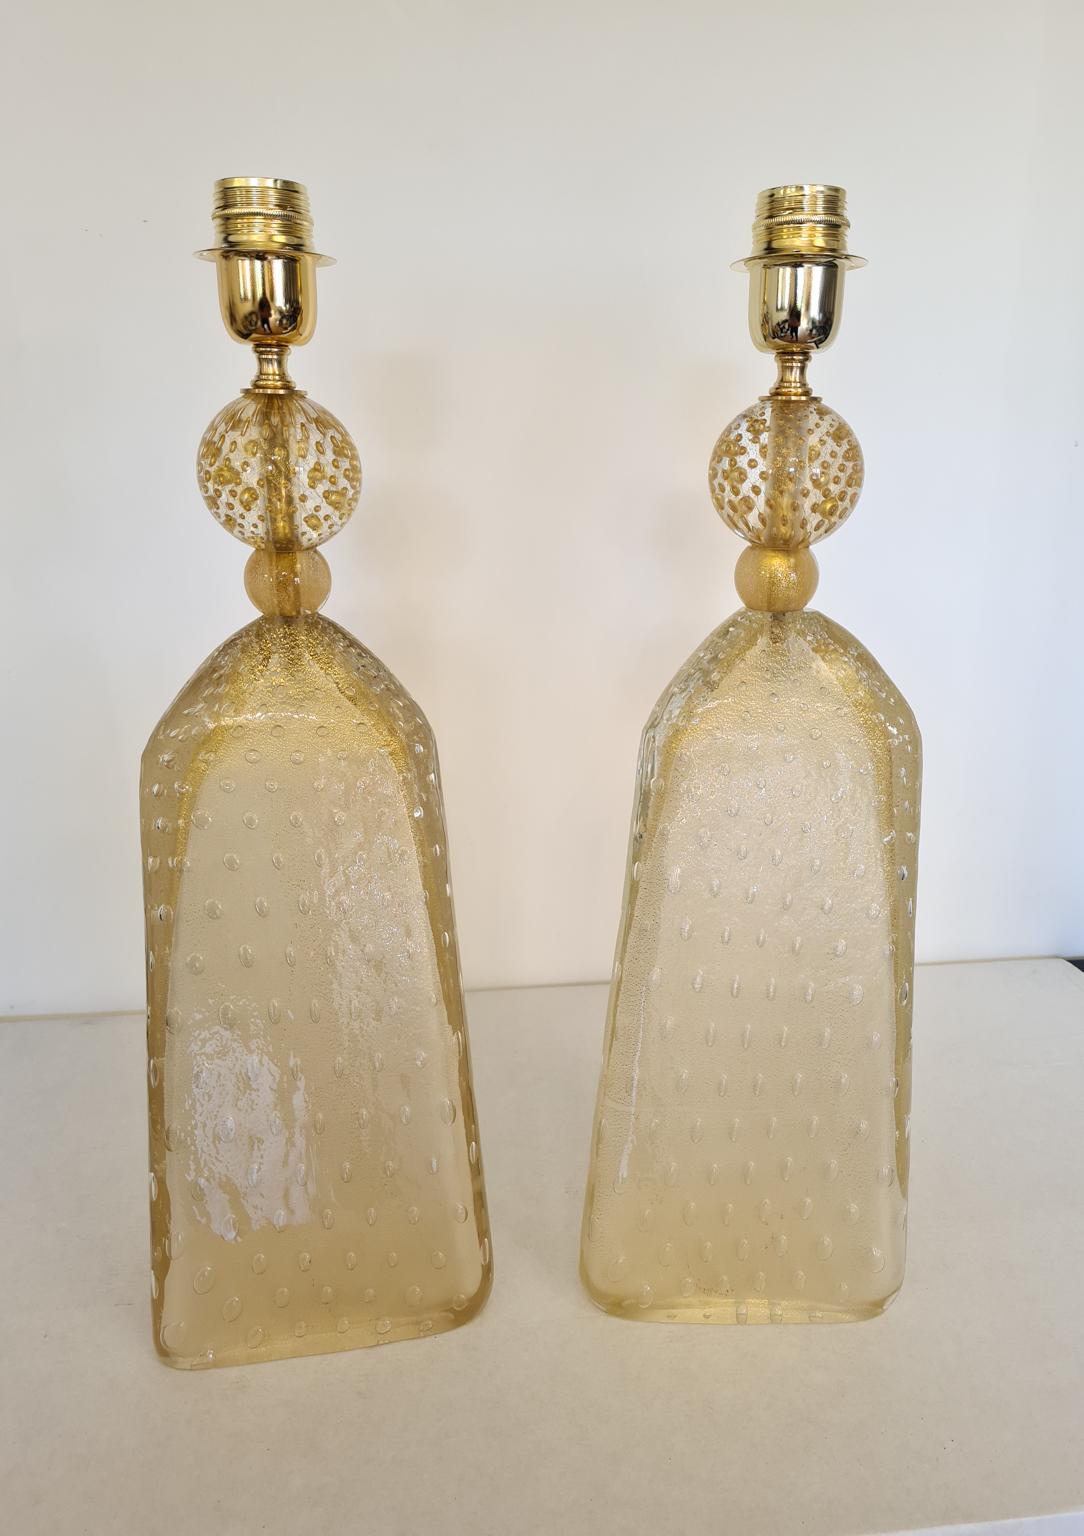 Paire exclusive de lampes de table en verre de Murano en cristal couleur or sablé.
Les lampes ont un procédé appelé Balloton qui consiste à immerger des bulles de verre.
Lampes triangulaires avec sphère dorée.
Les produits sont entièrement